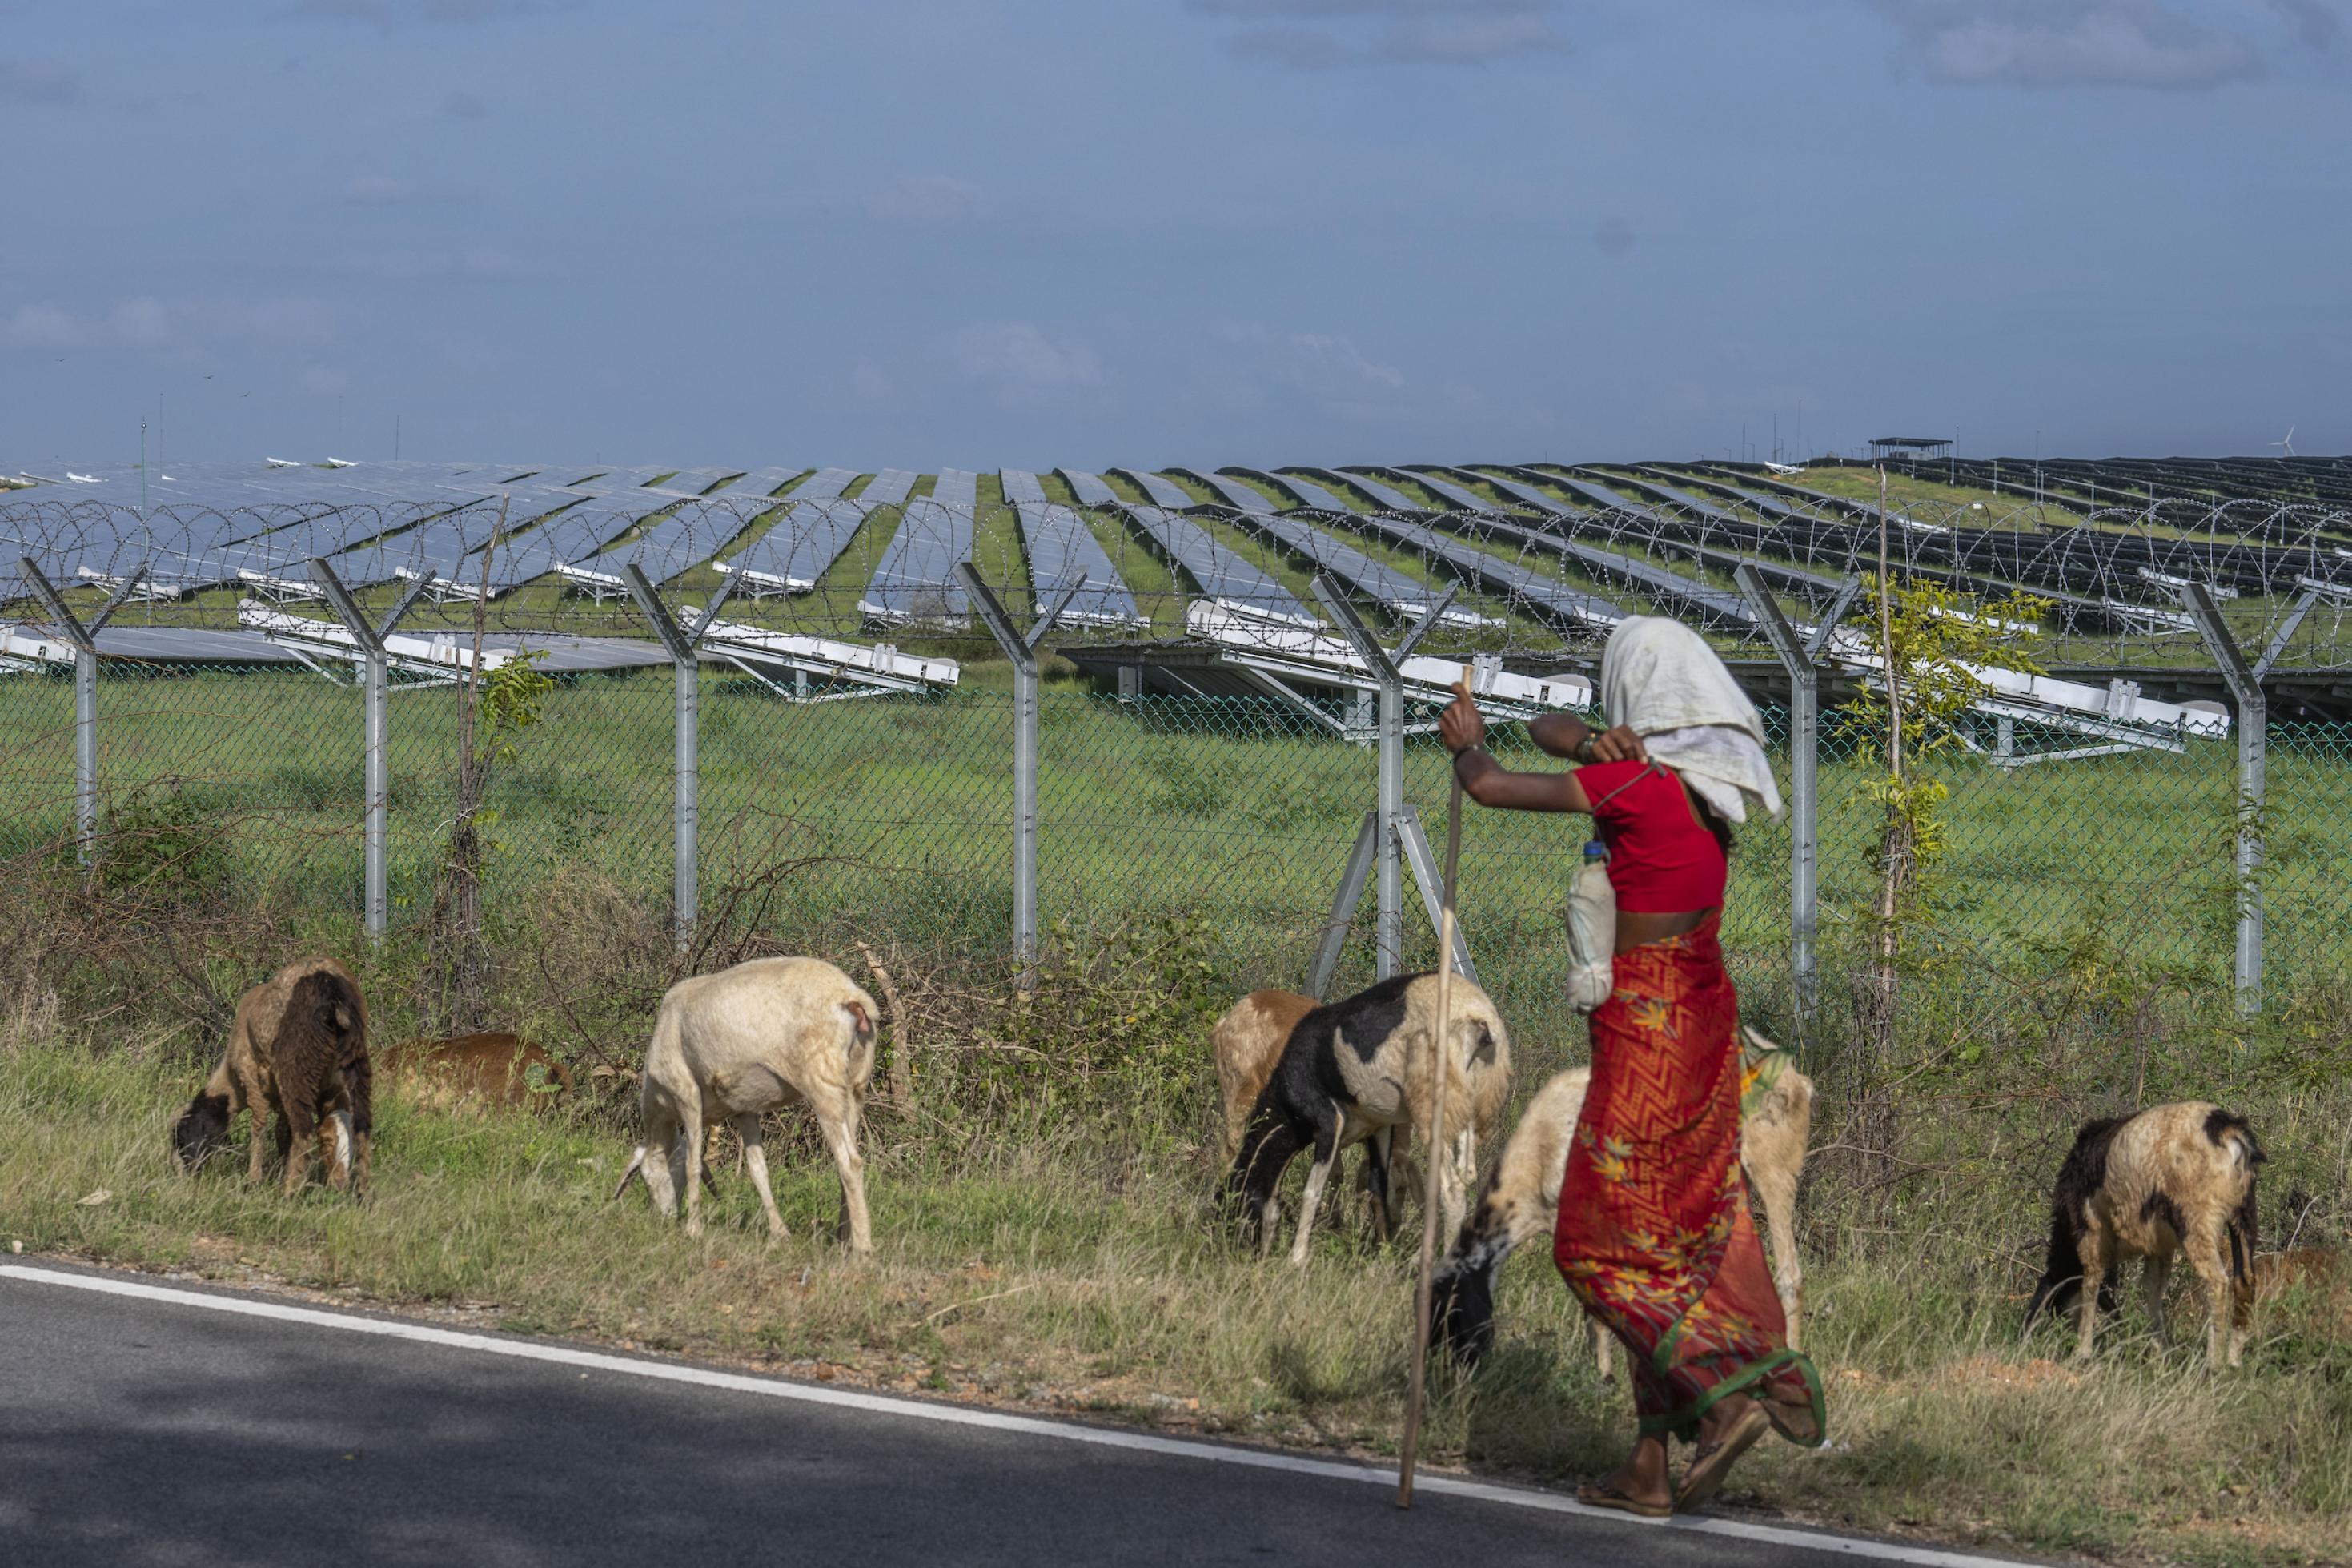 Eine Frau in rotem Kleid treibt Ziegen vor sich her vor dem Hintergrund eines weitflächigen Solarkraftwerks mit Panelen.